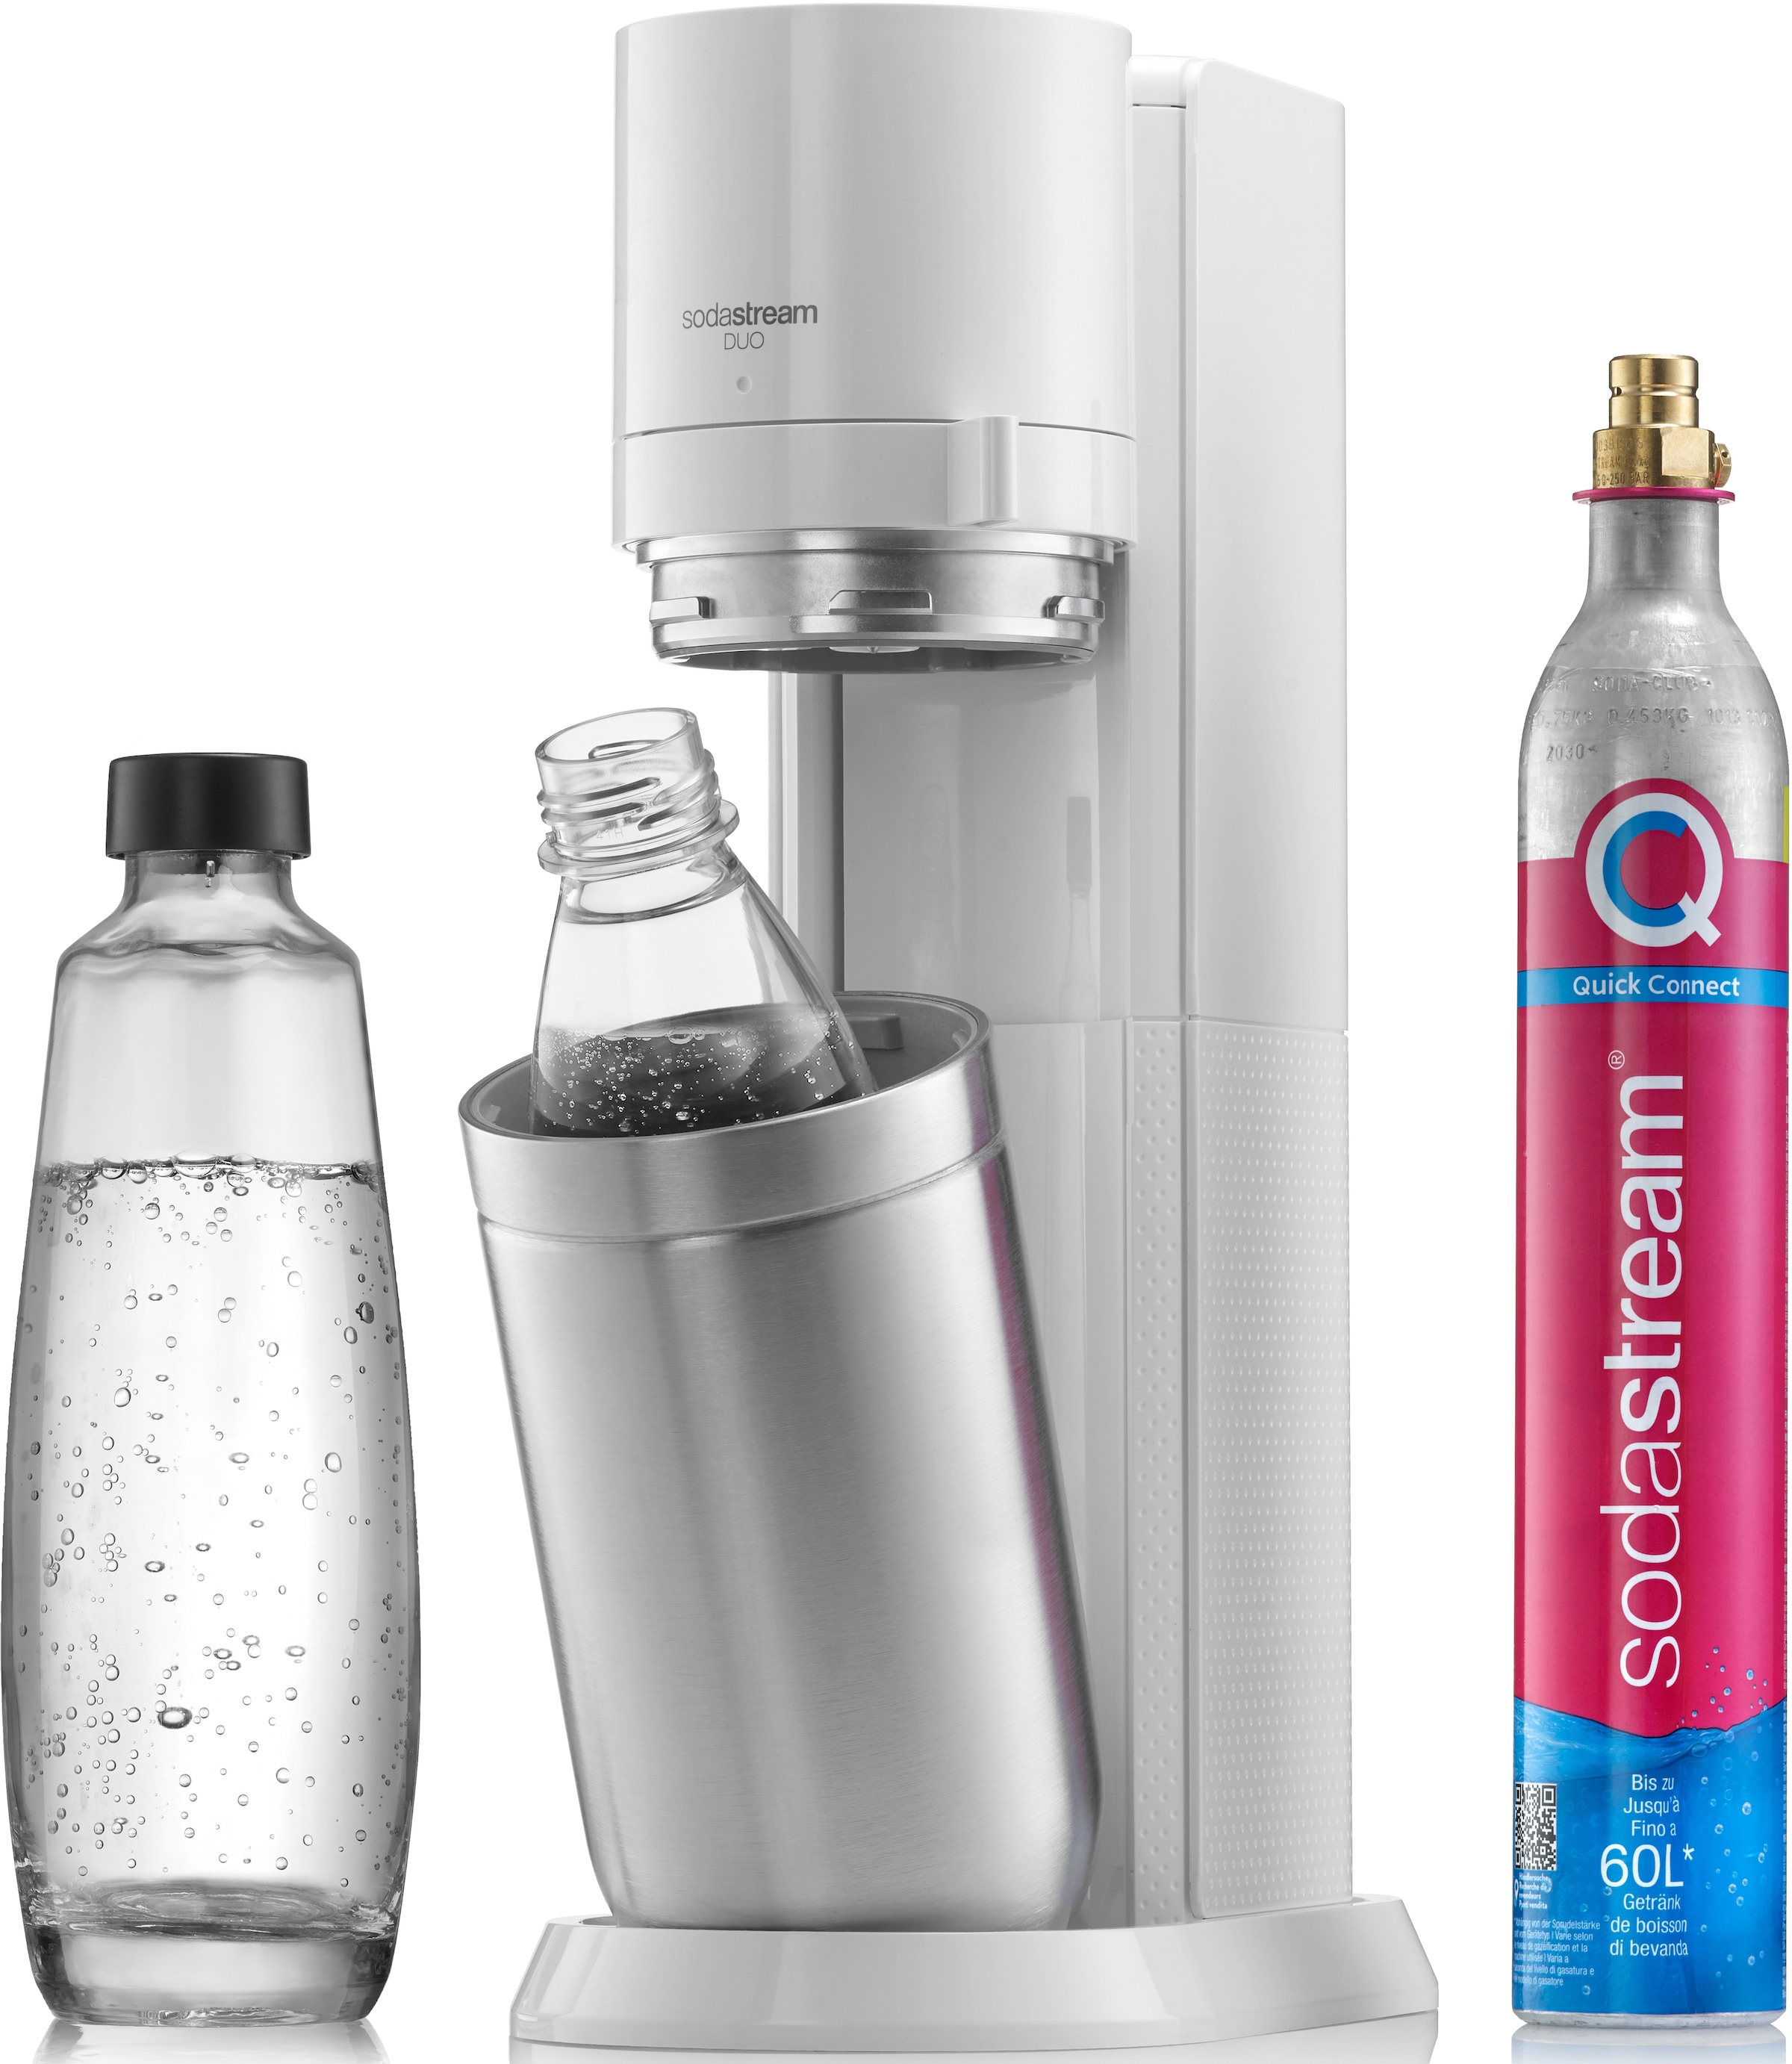 SodaStream Wassersprudler »DUO«, (Set, 4 tlg.), CO2-Zylinder, 1L Glasflasche, 1L spülmaschinenfeste Kunststoff-Flasche